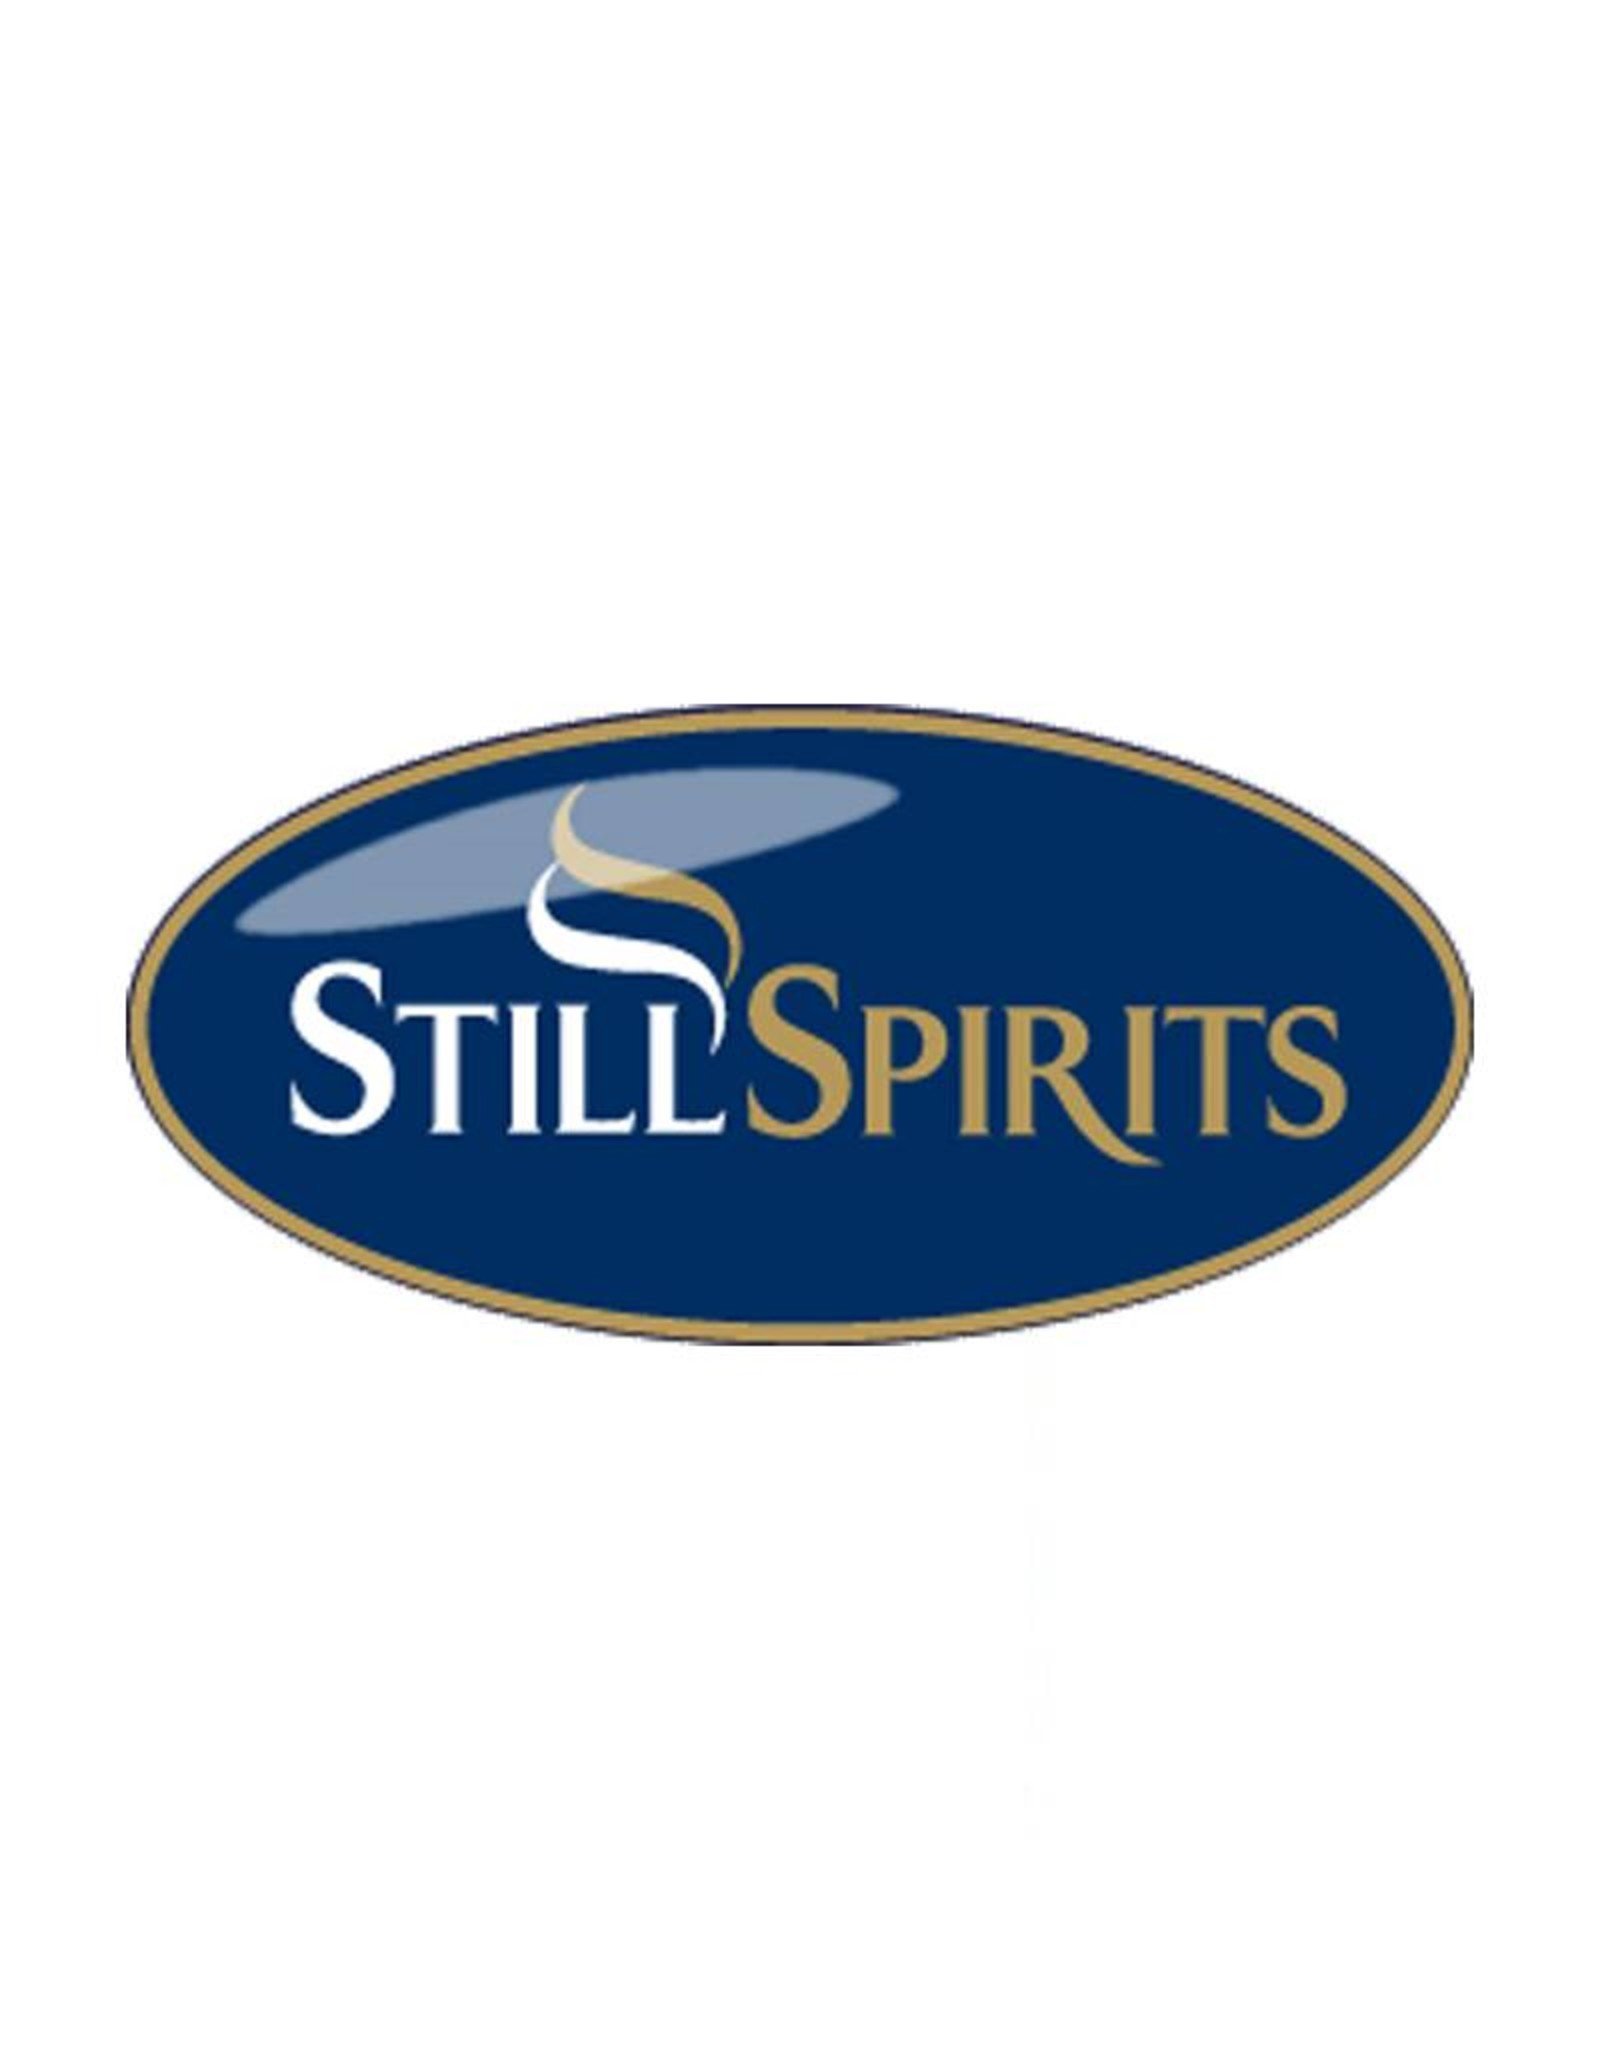 Still Spirits Air Still Water Distiller